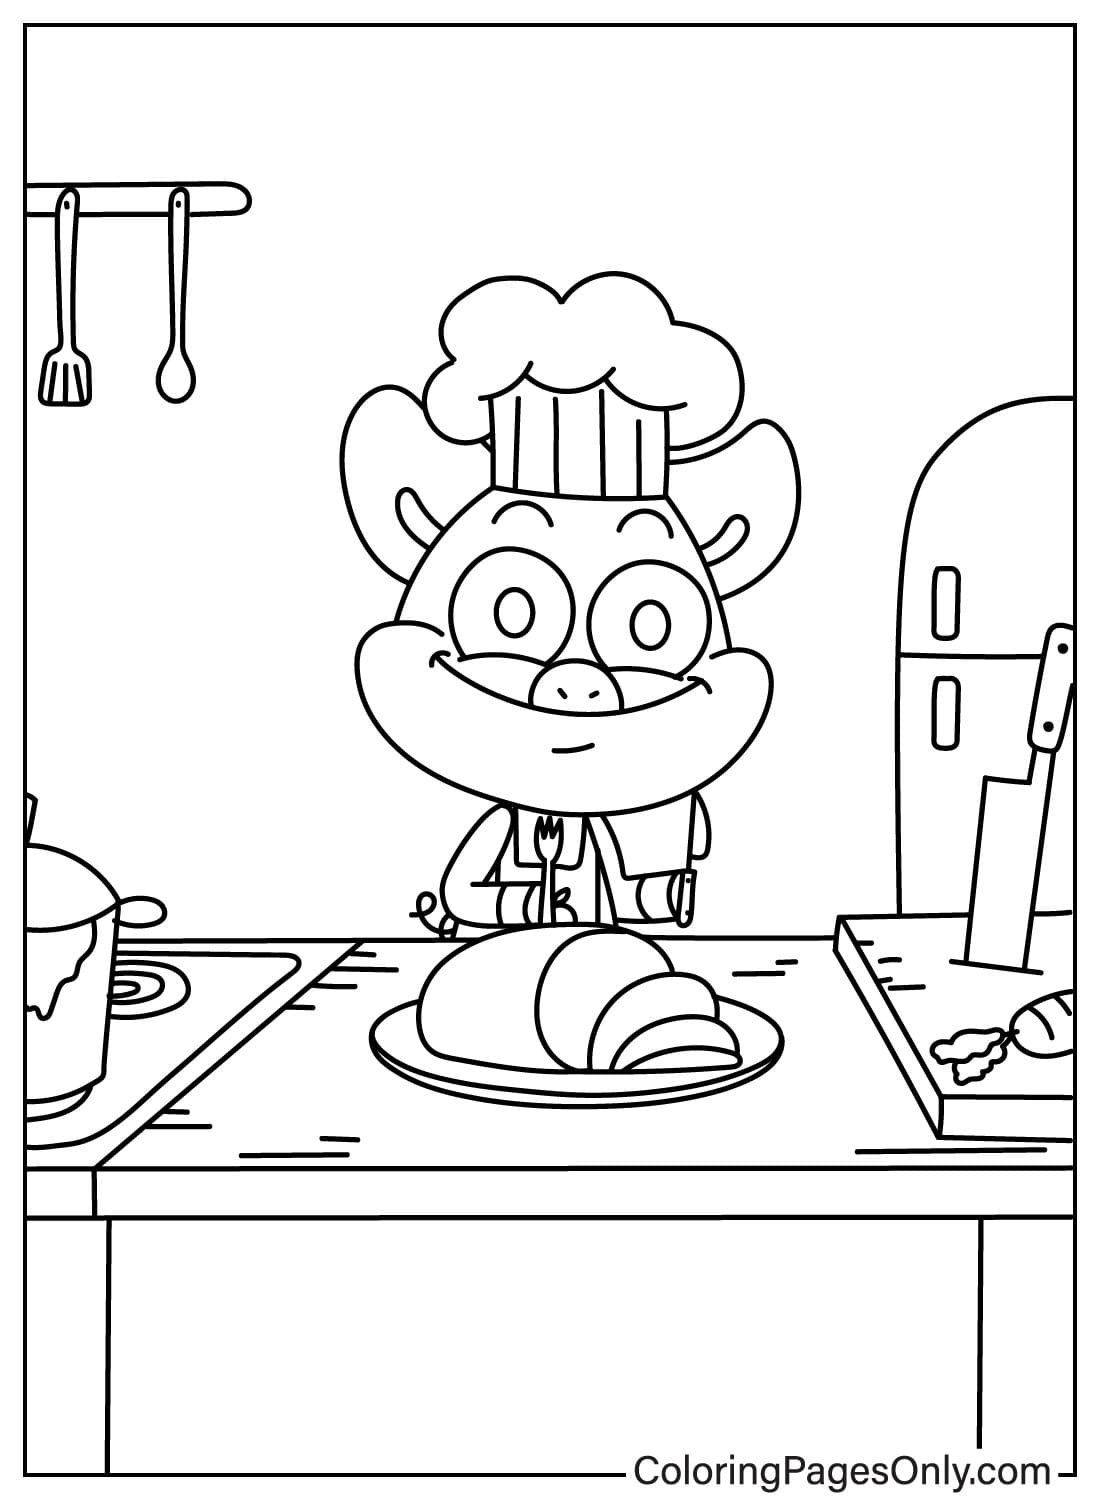 Página para colorir do cozinheiro PickyPiggy de PickyPiggy